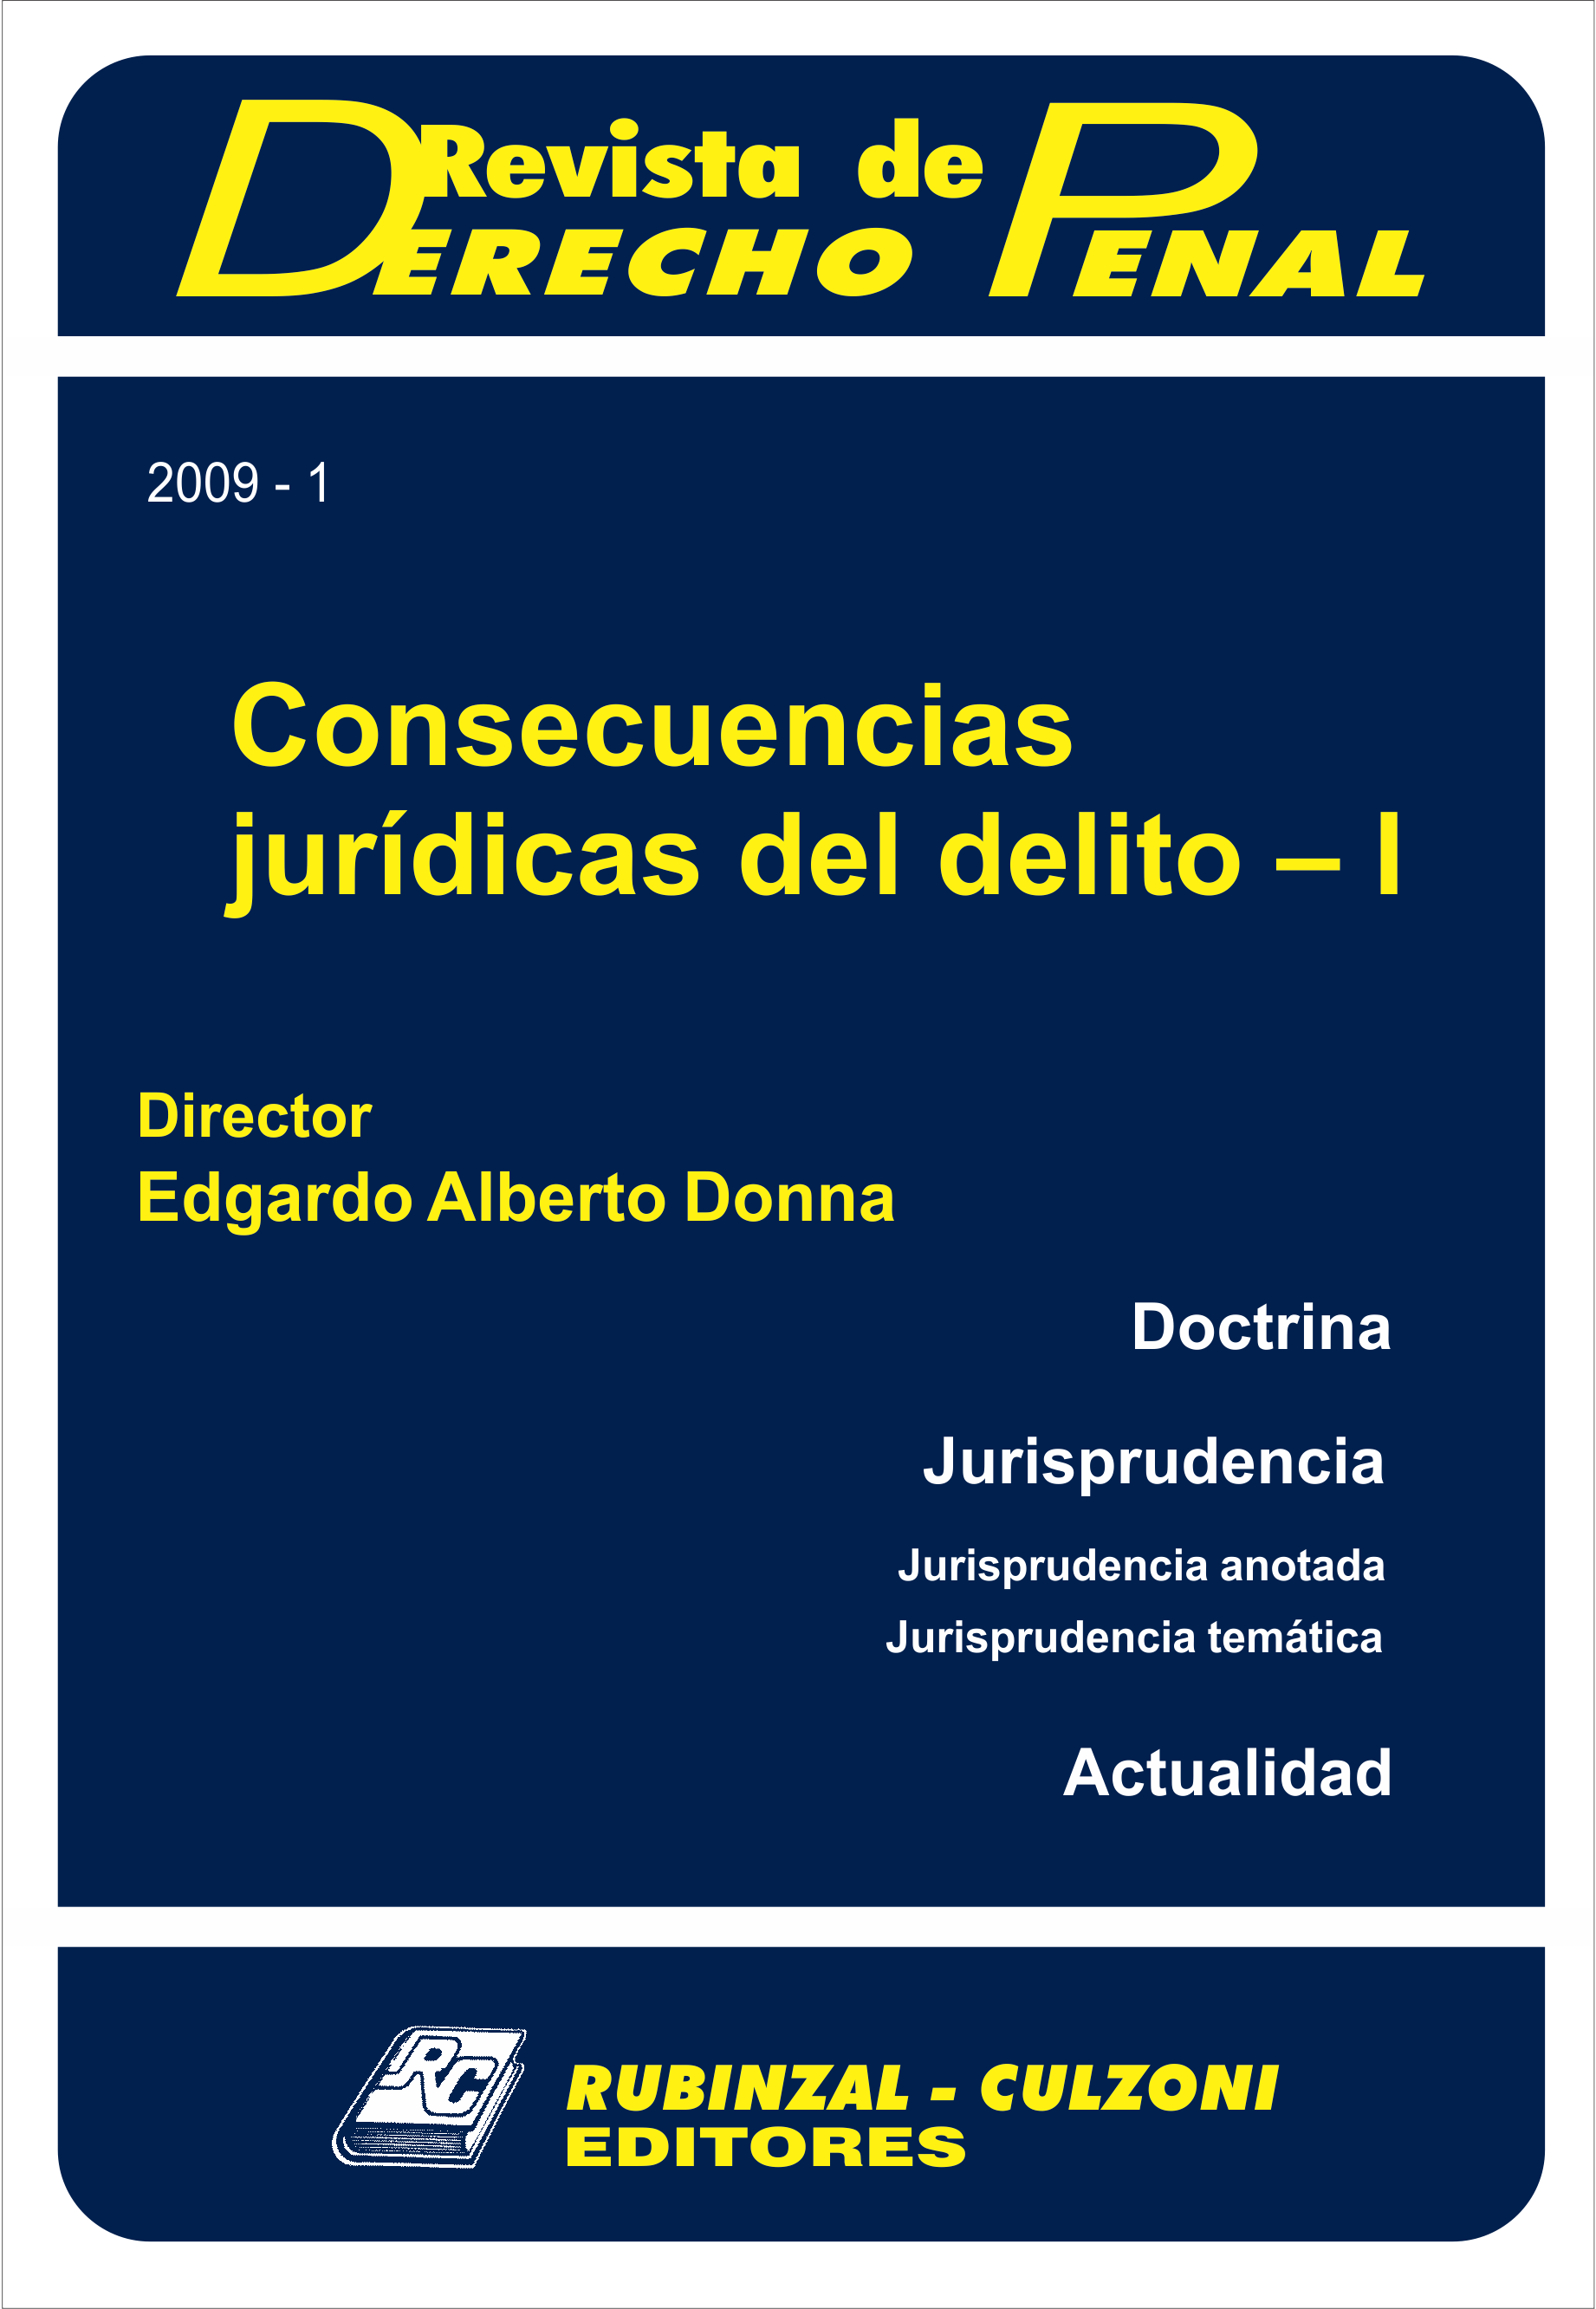 Revista de Derecho Penal - Consecuencias jurídicas del delito - I